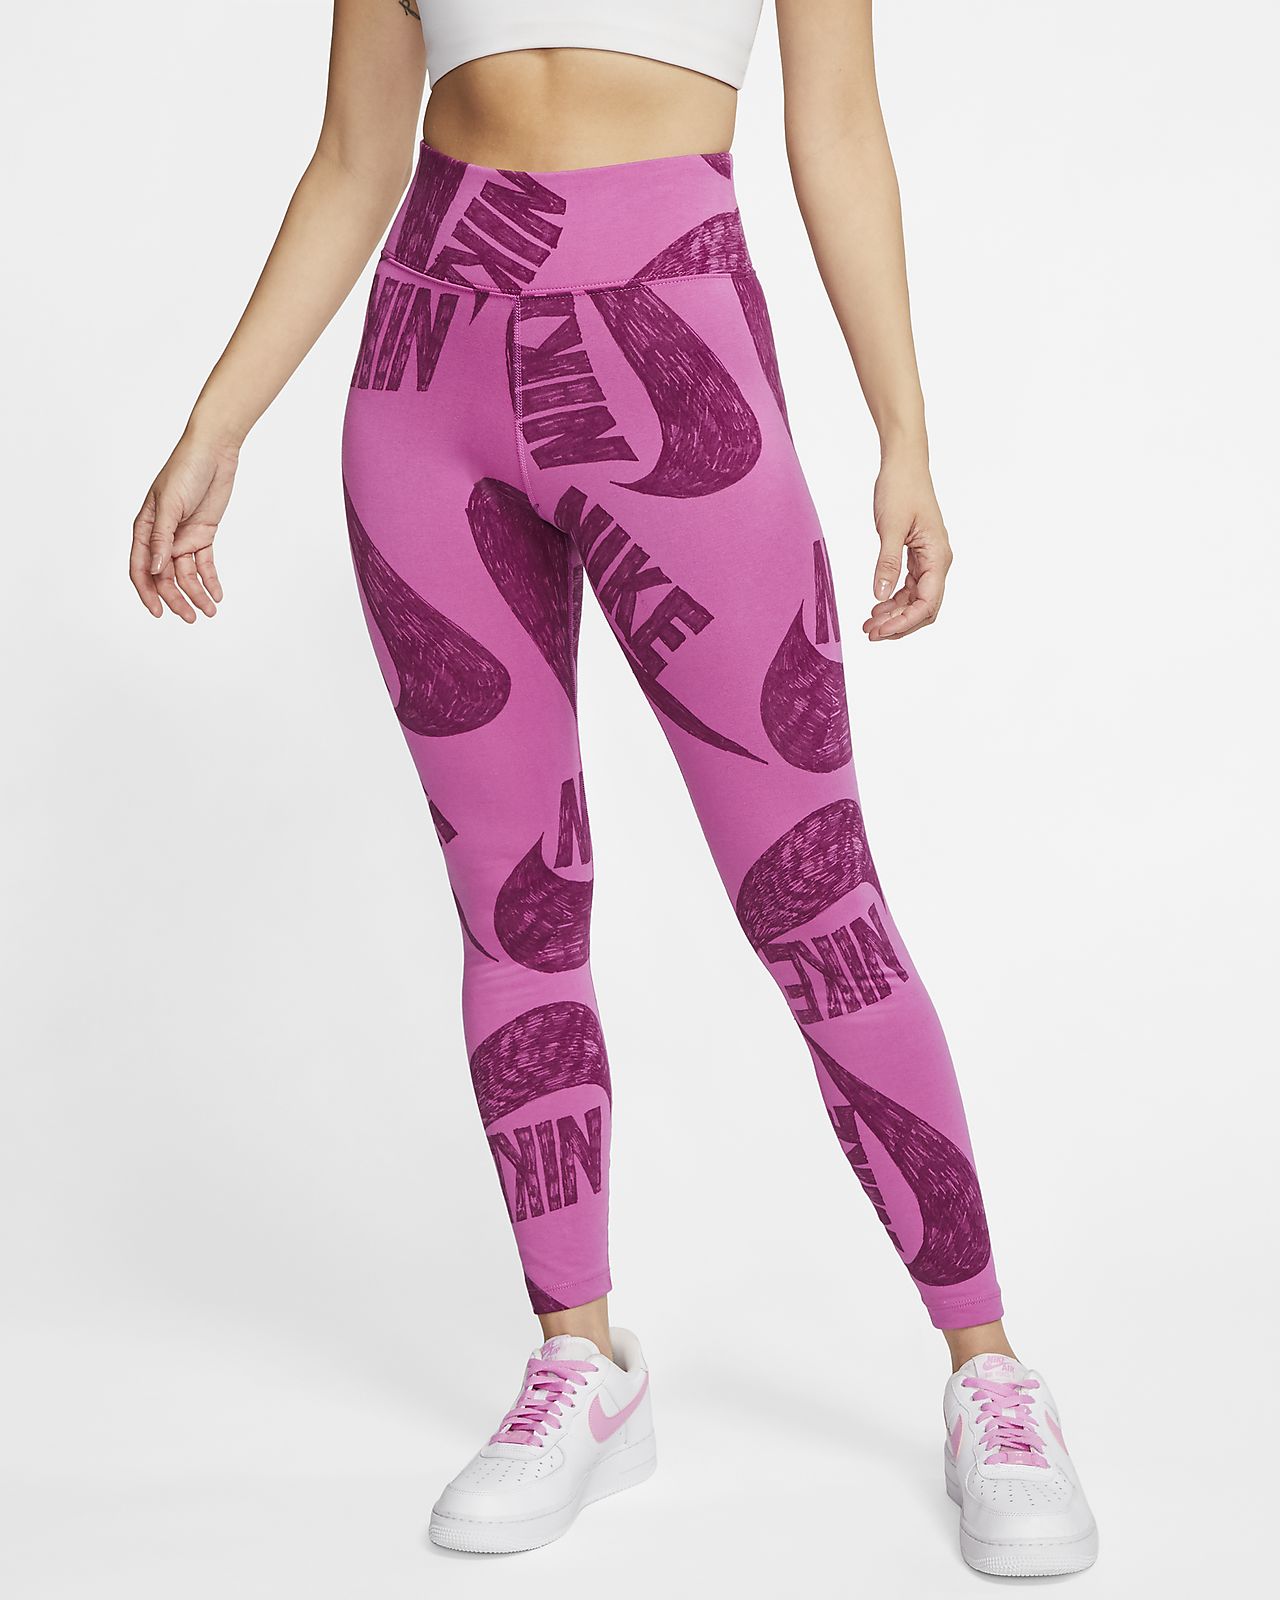 women's nike printed leggings